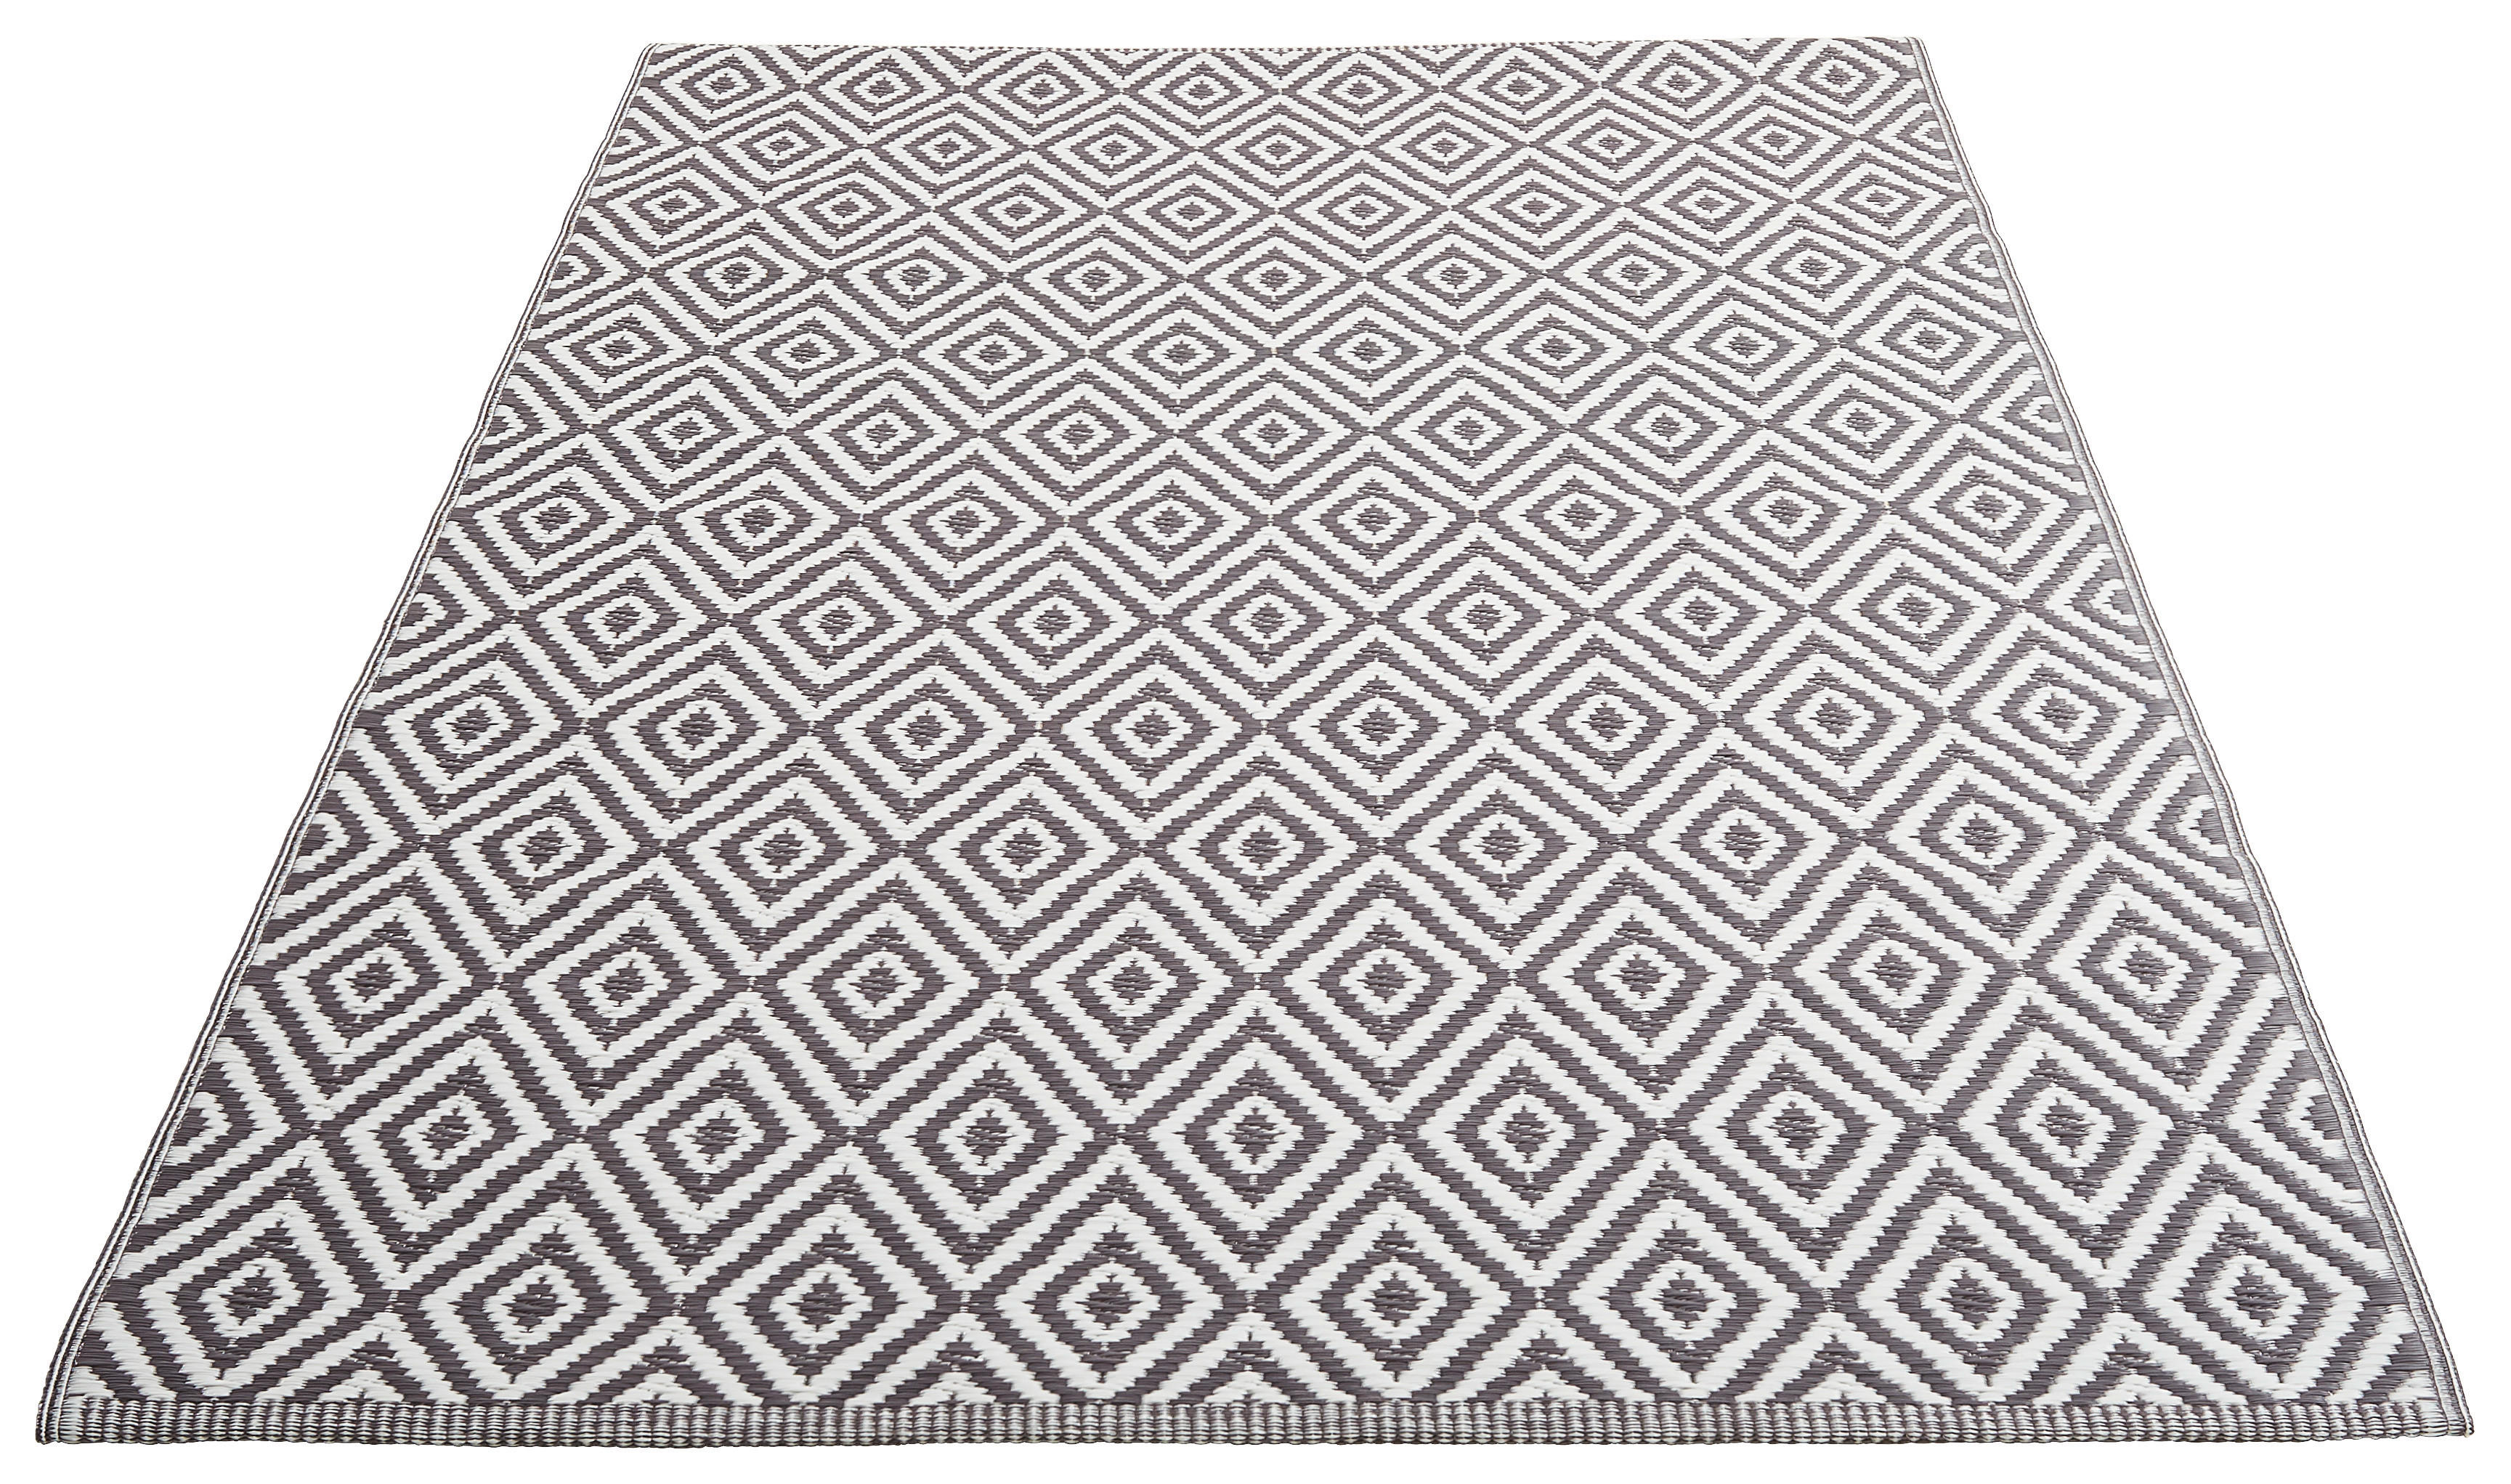 OUTDOORTEPPICH  In-/ Outdoor 90/150 cm  Grau, Weiß   - Weiß/Grau, Trend, Textil (90/150cm) - Boxxx